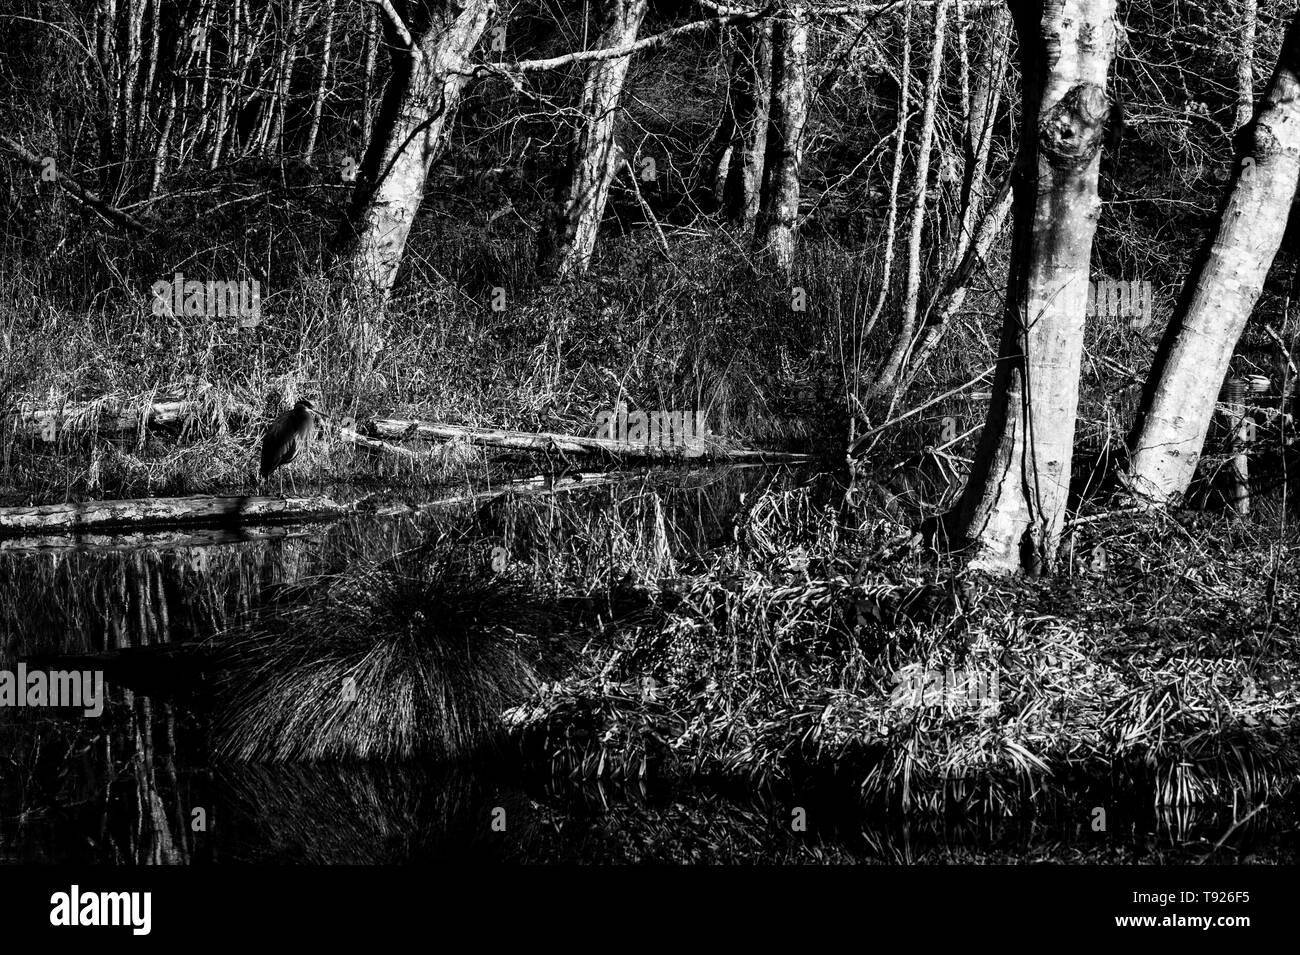 Image en noir et blanc des marais, d'arbres avec des branches nues reflétée dans l'eau avec attente Heron. Banque D'Images